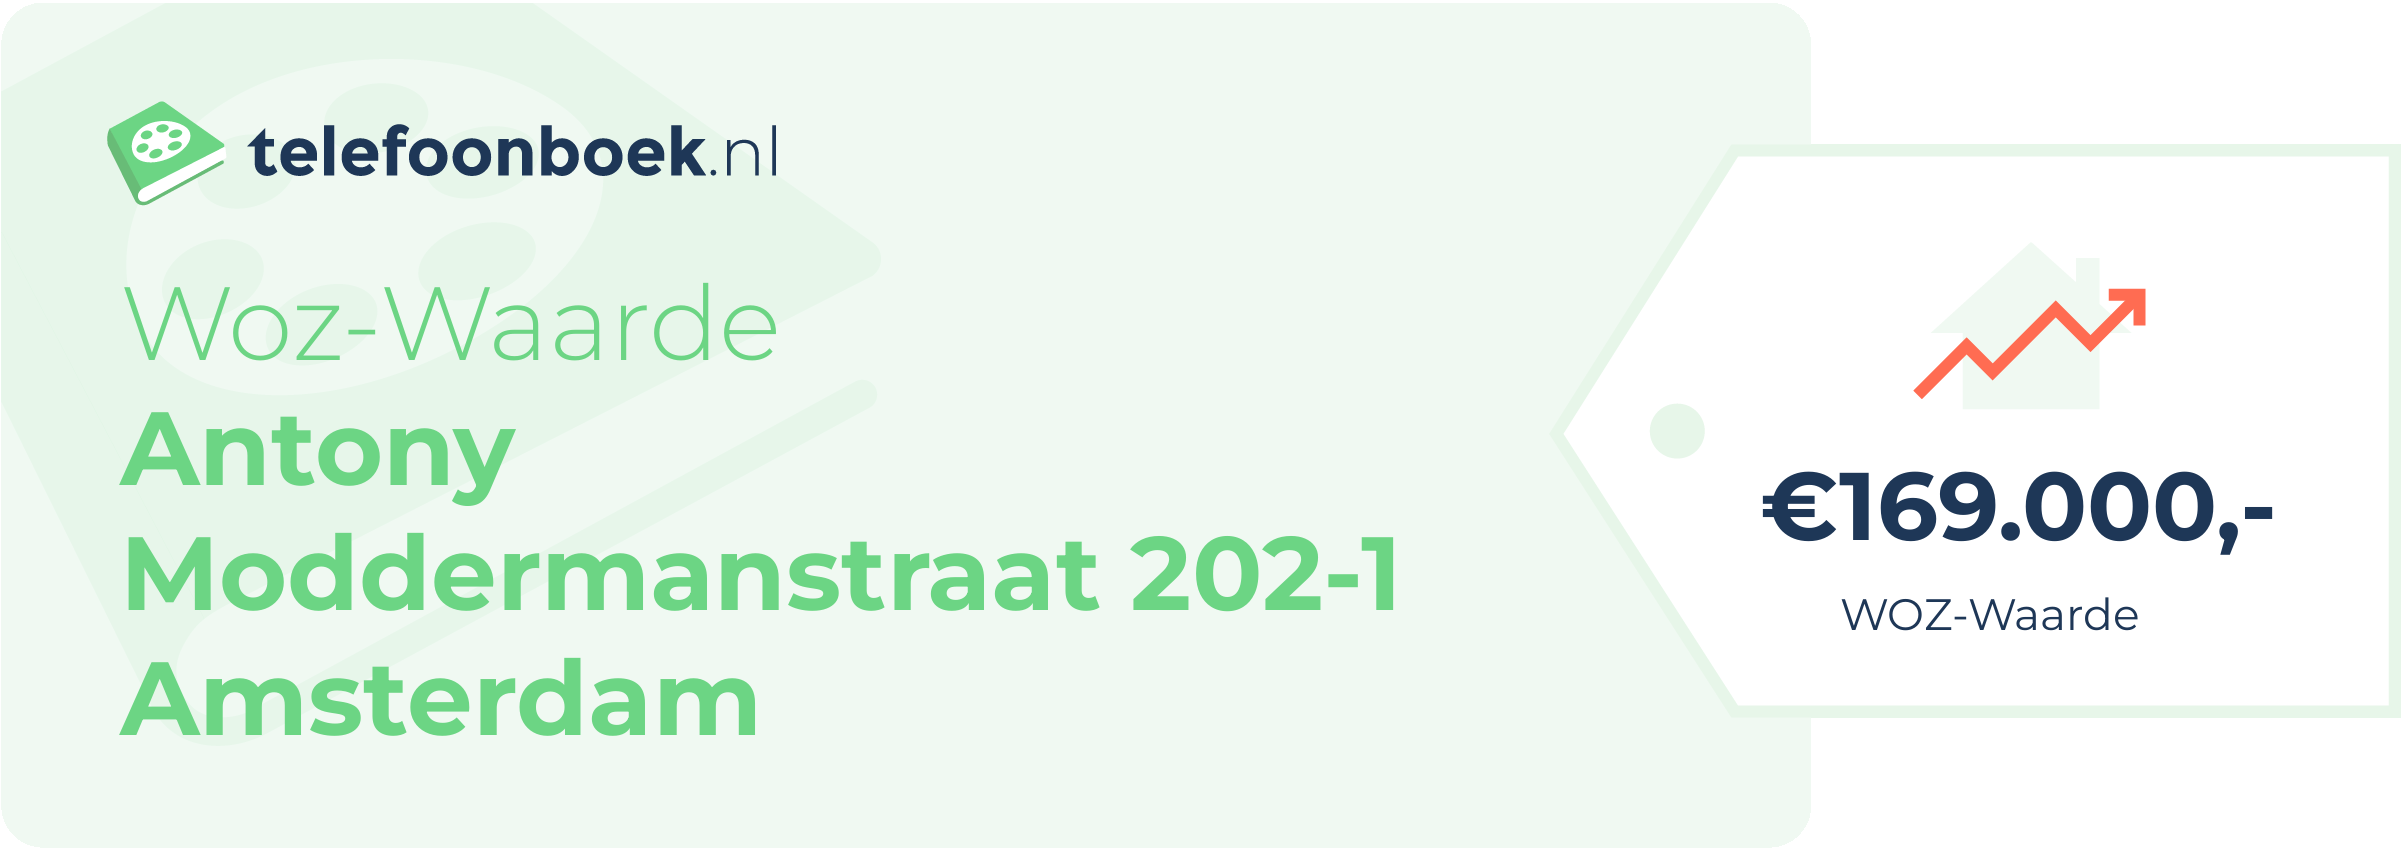 WOZ-waarde Antony Moddermanstraat 202-1 Amsterdam